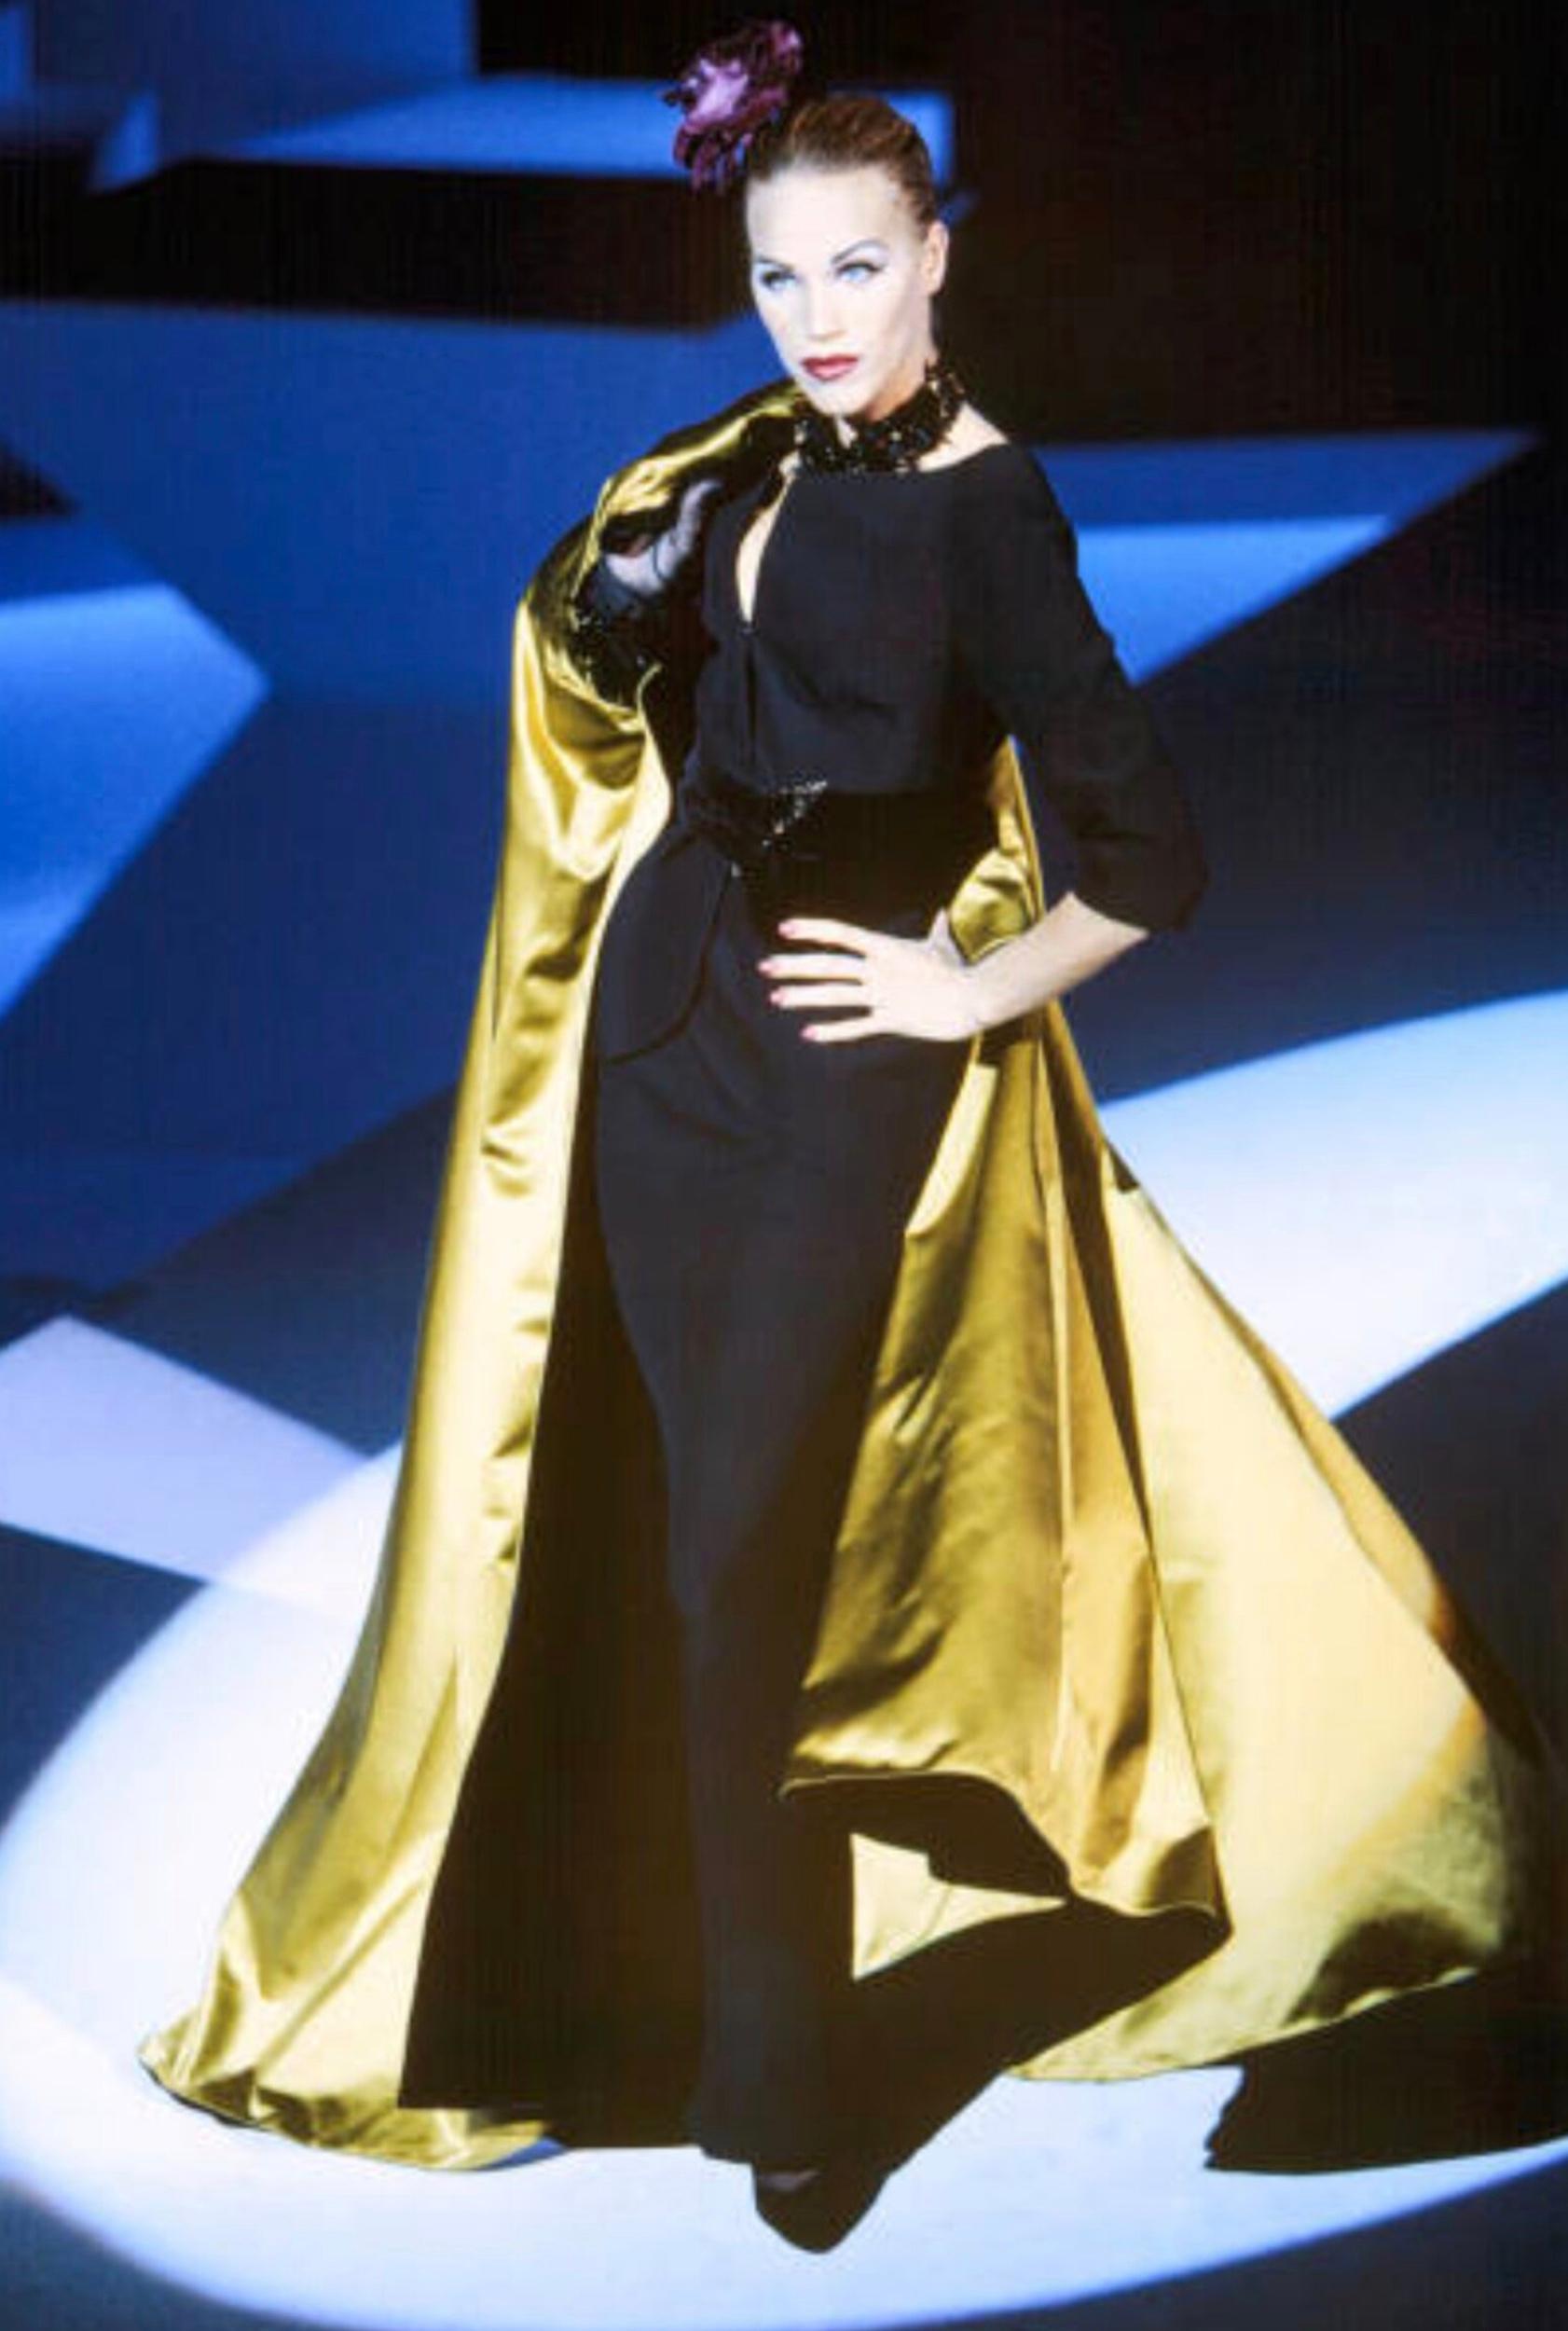 
Pièce iconique de Thierry Mugler
Fabuleusement présenté par Emma Sojberg sur le légendaire FW1995-96 Fashionshow !
Blazer noir élégant avec un décolleté magnifique ! Ceinture en velours à la taille. La boucle de la ceinture est particulièrement